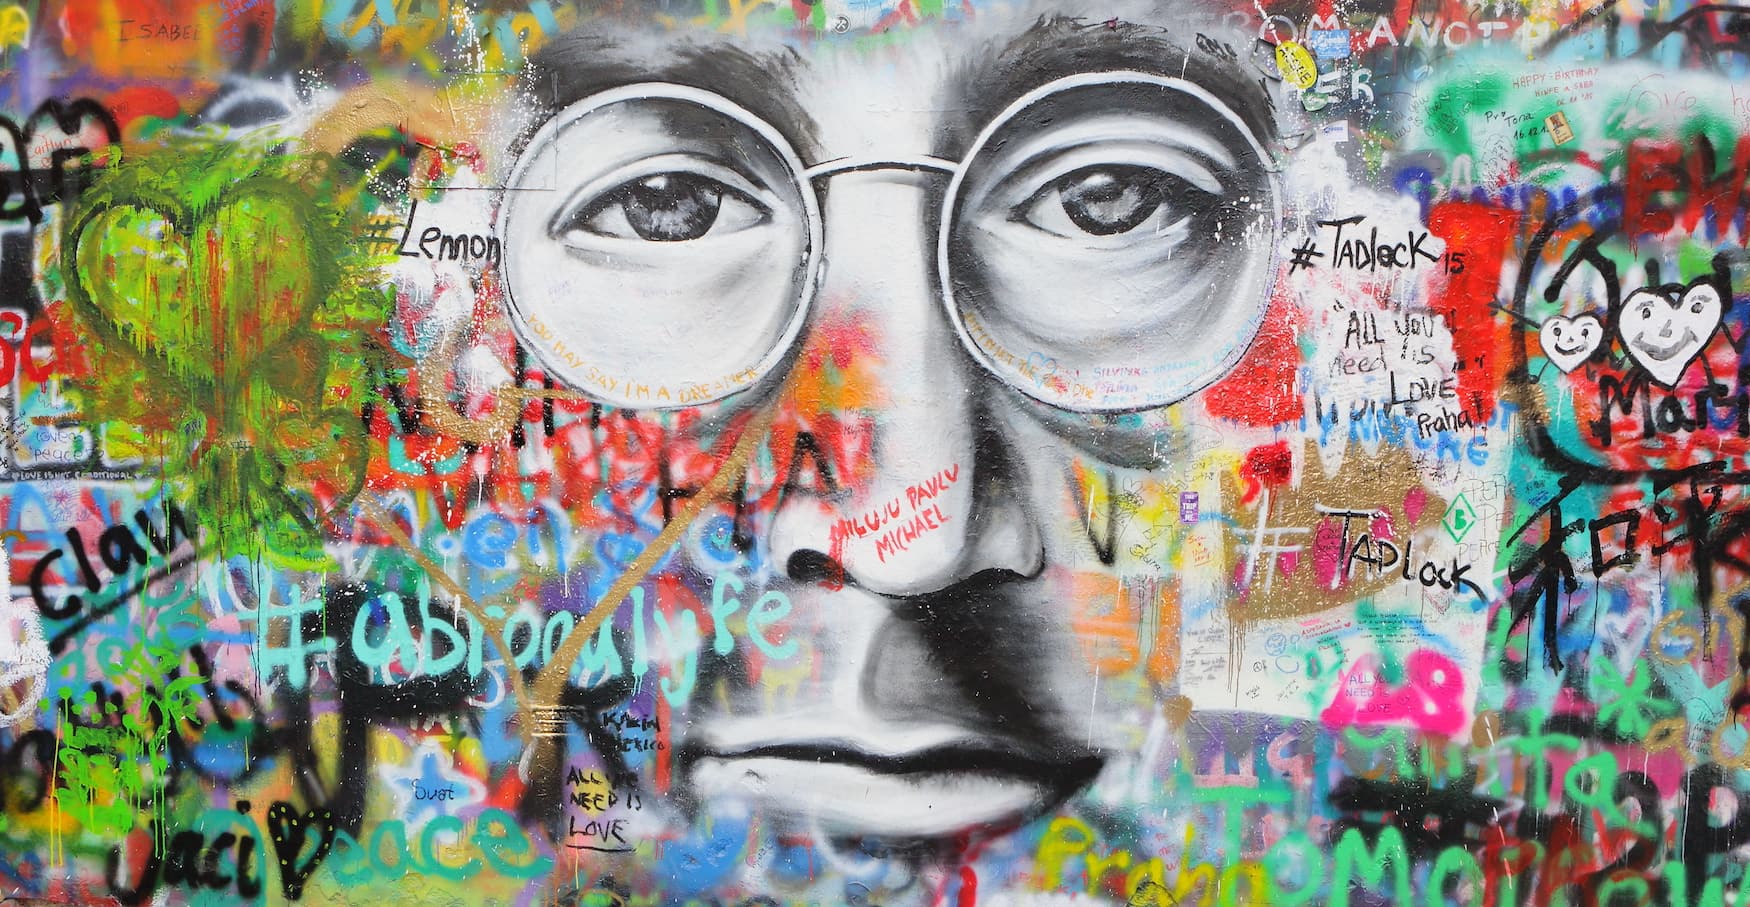 John Lennon street art in Prague